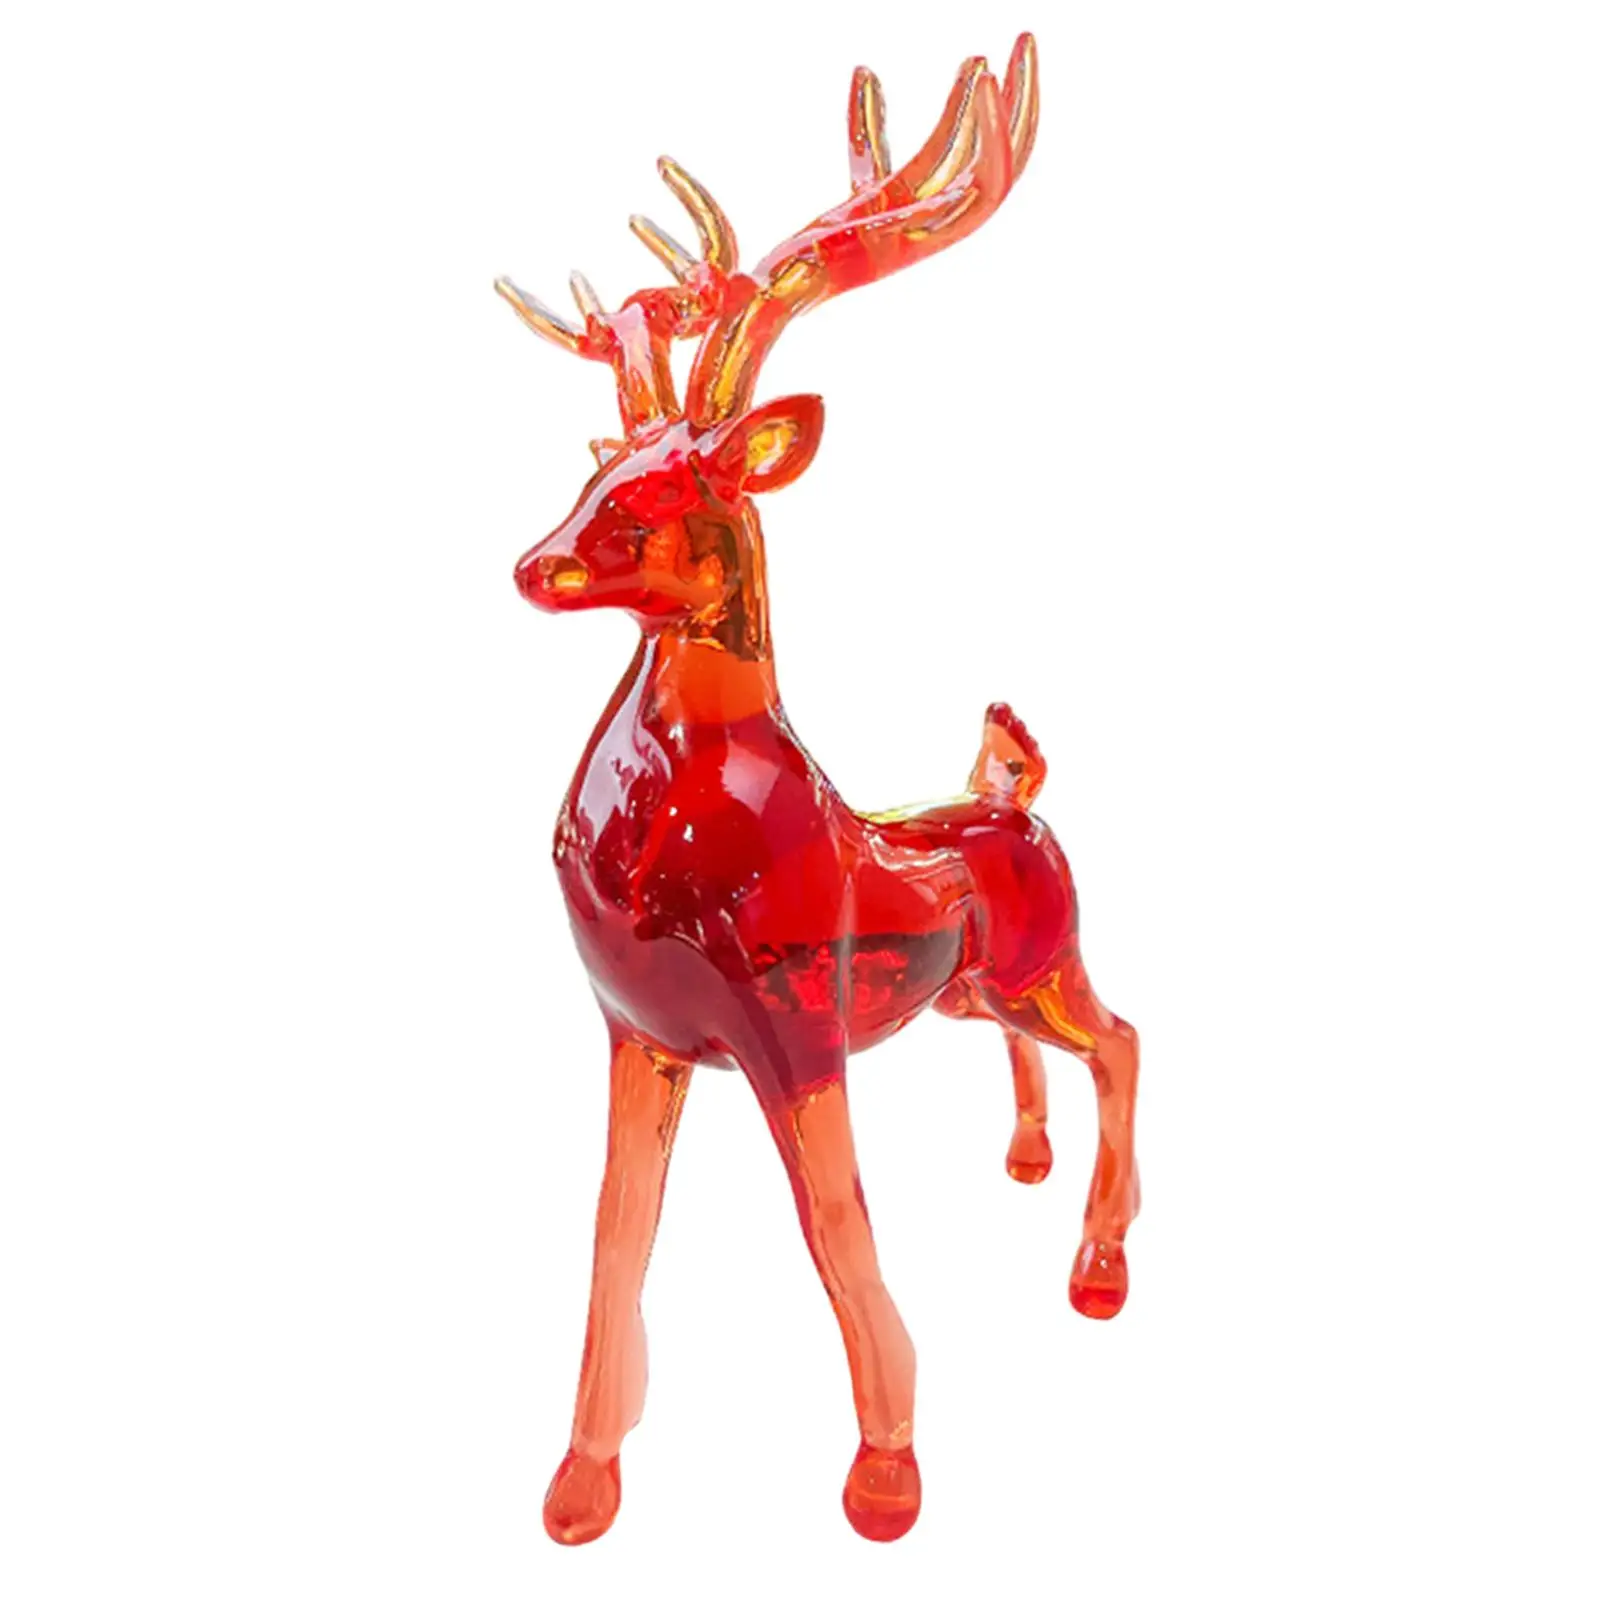 Deer Statue Crafts Transparent Appearance Nordic Resin Art Deer Sculpture Decoration for Home Decoration Shelf Bathroom Cafe Car